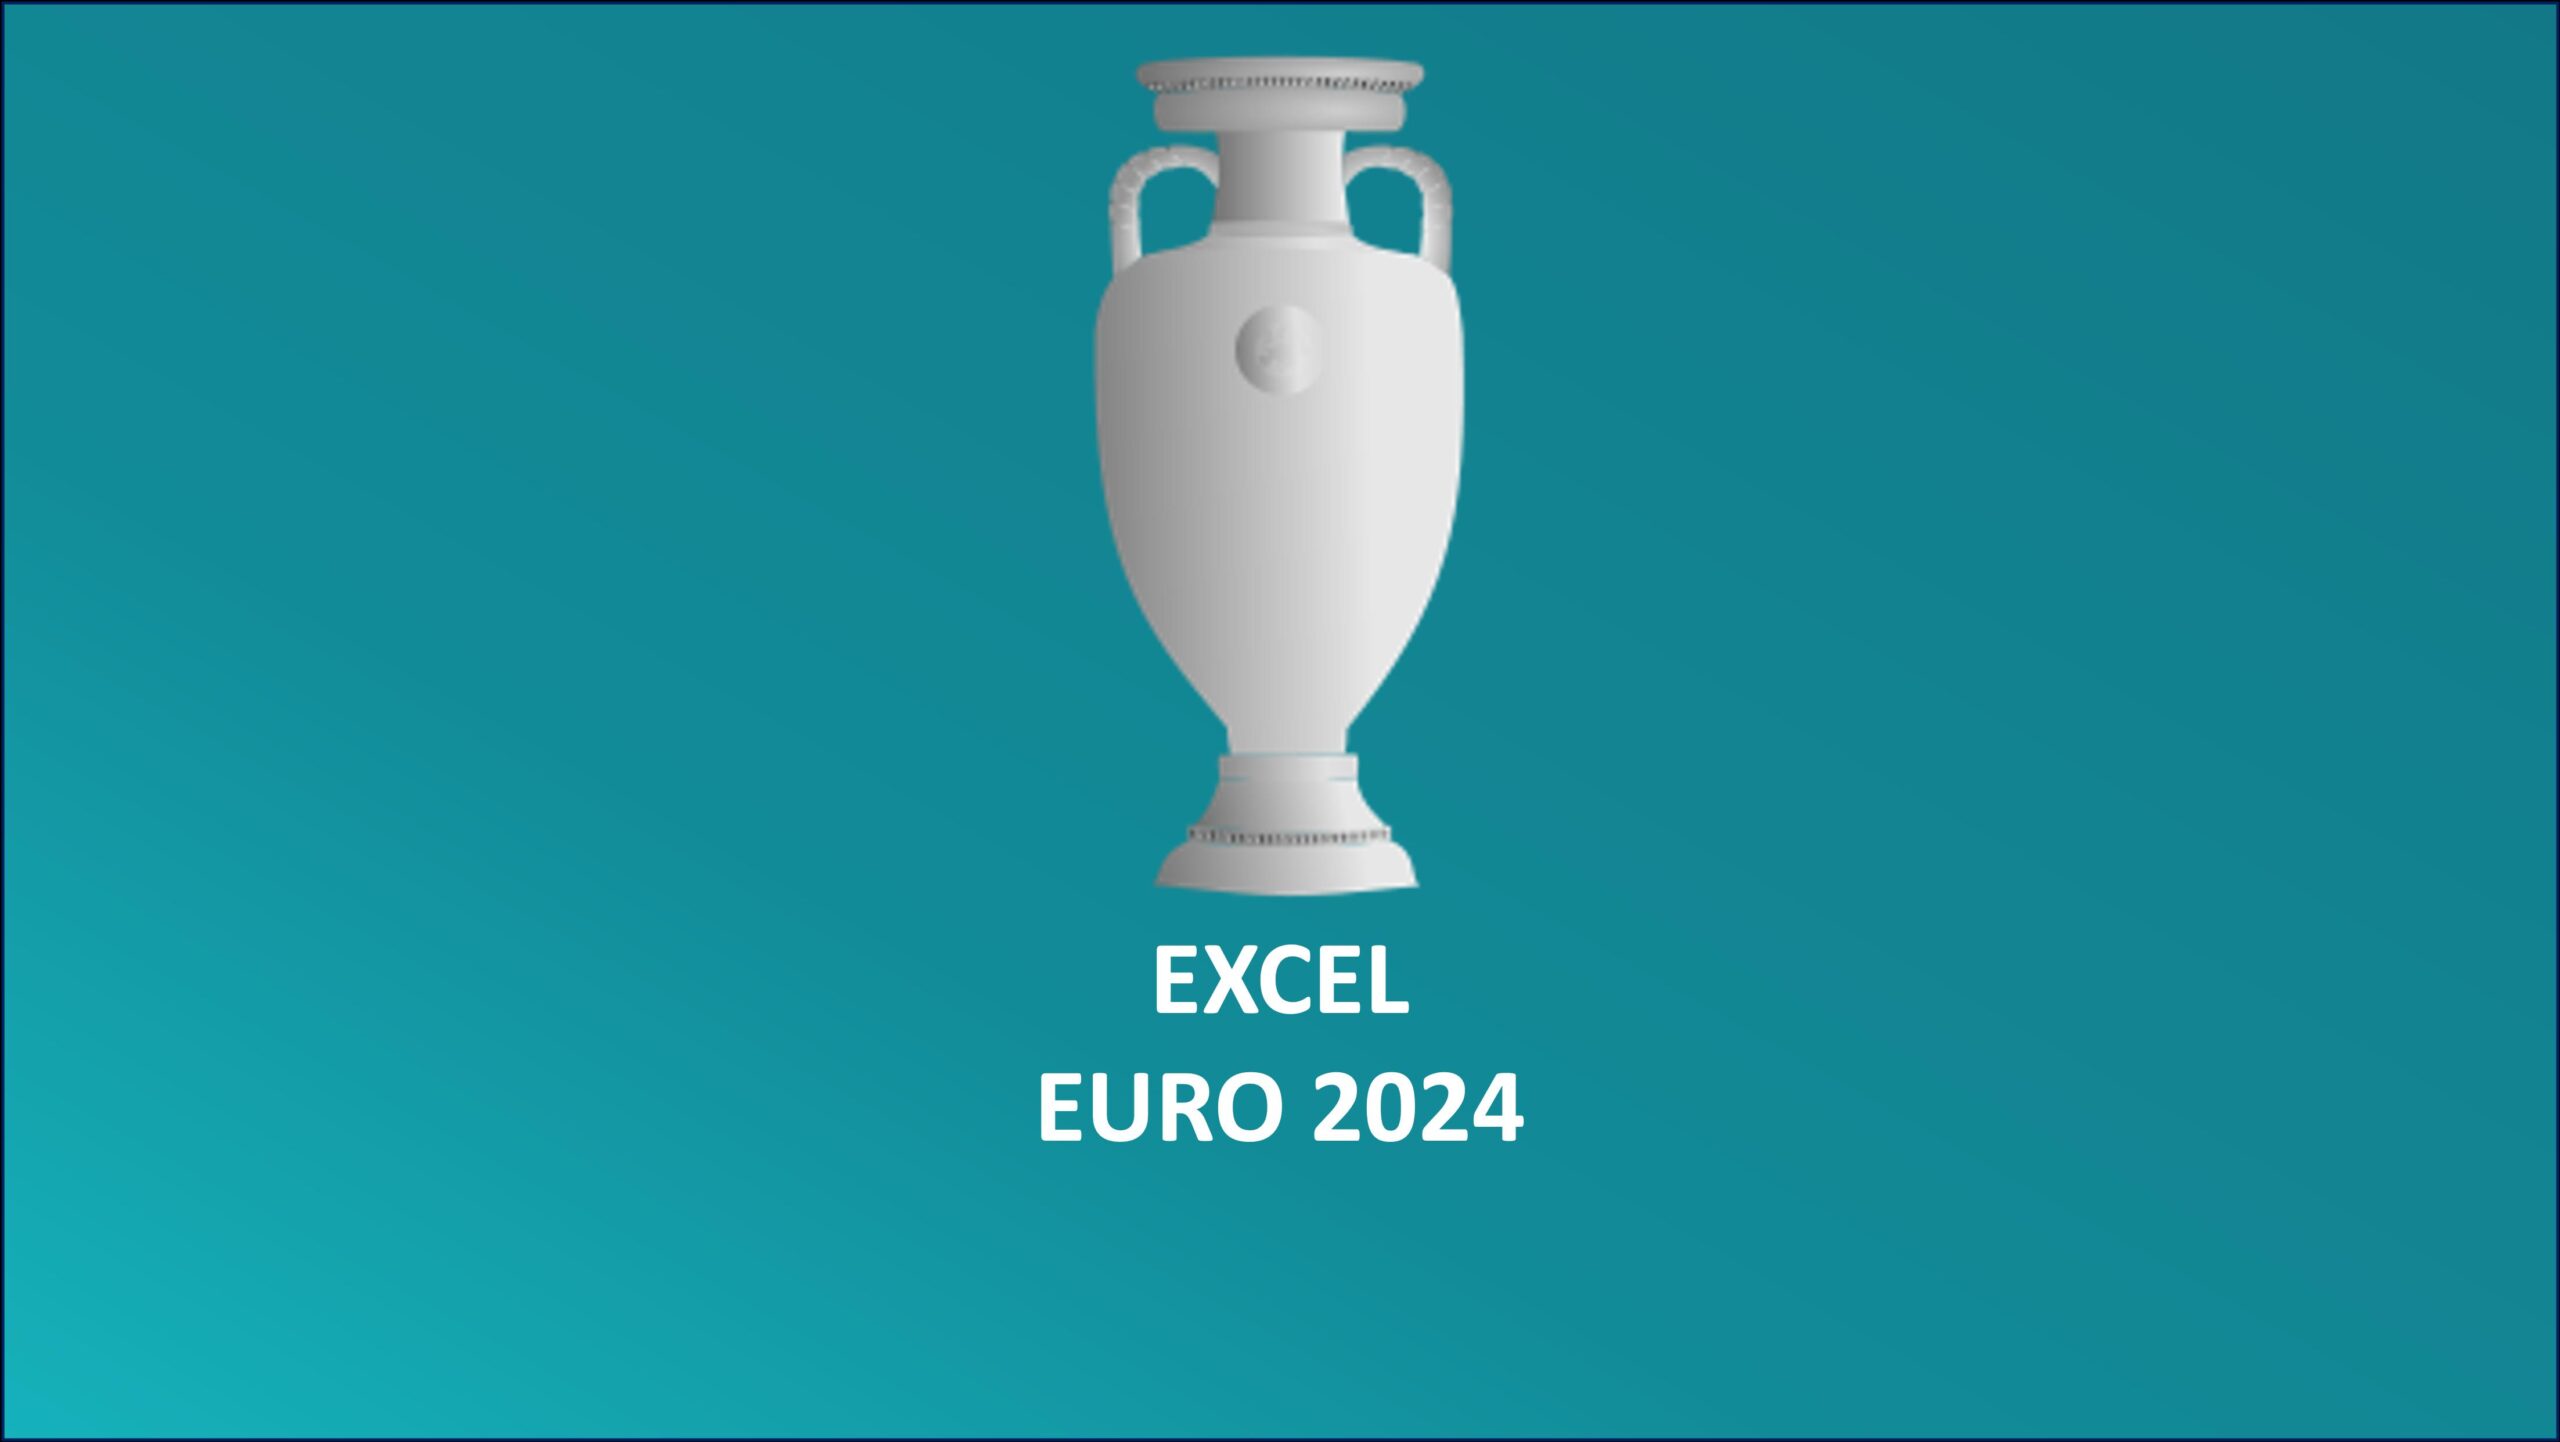 Euro 2024 Fixture List Excel Elset Horatia